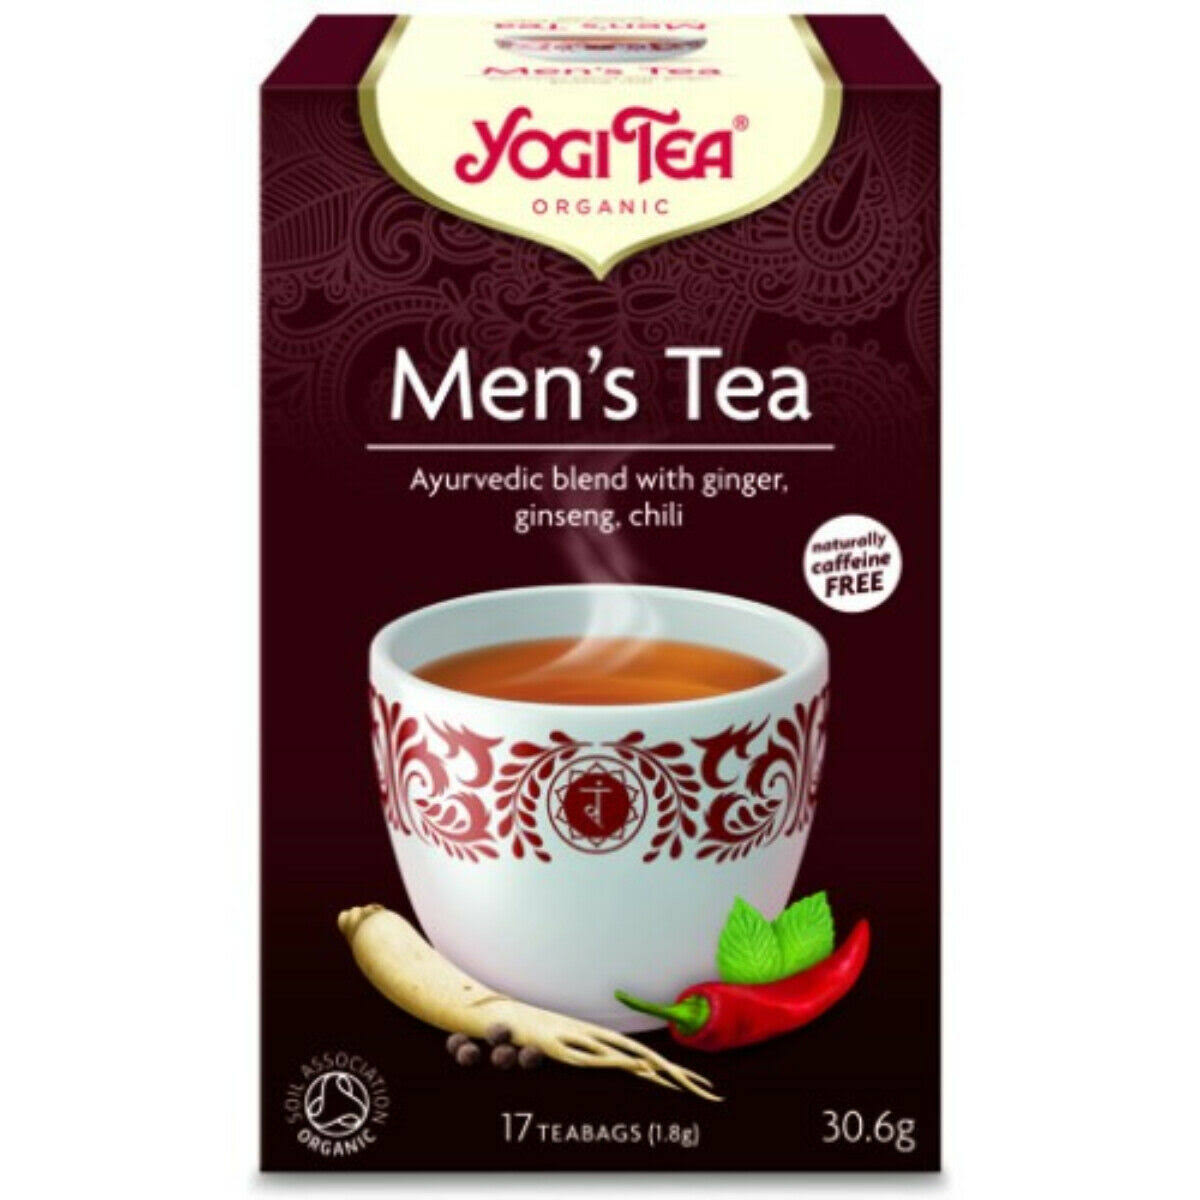 Yogi Tea Organic Mens Tea - 17 Teabags, 30.6g